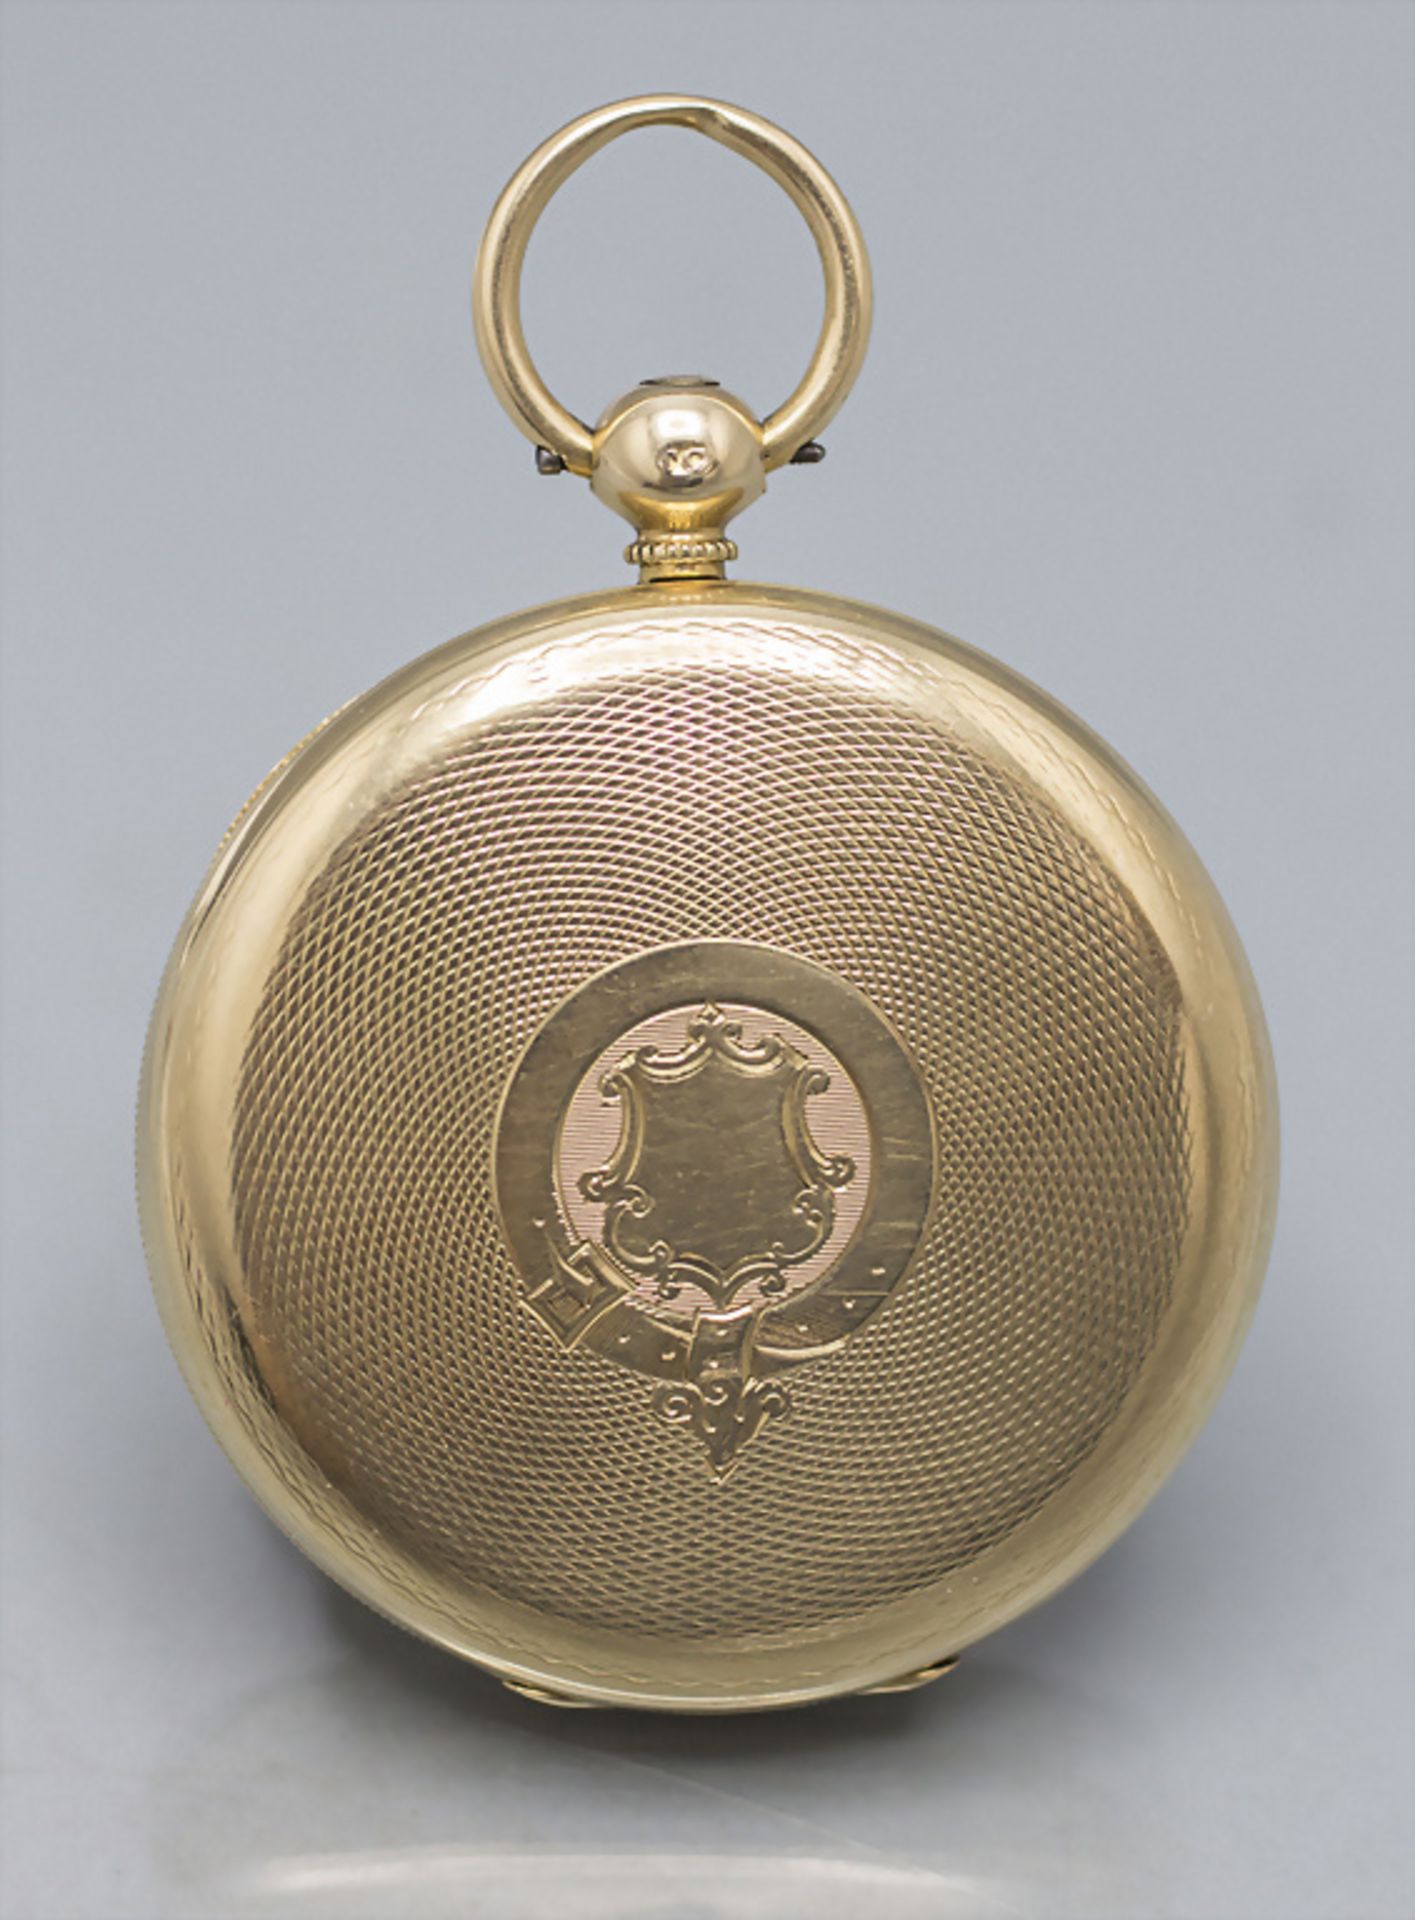 Offene Taschenuhr / An 18 ct gold pocket watch, Geo. Jamieson, Aberdeen, um 1820 - Image 5 of 6